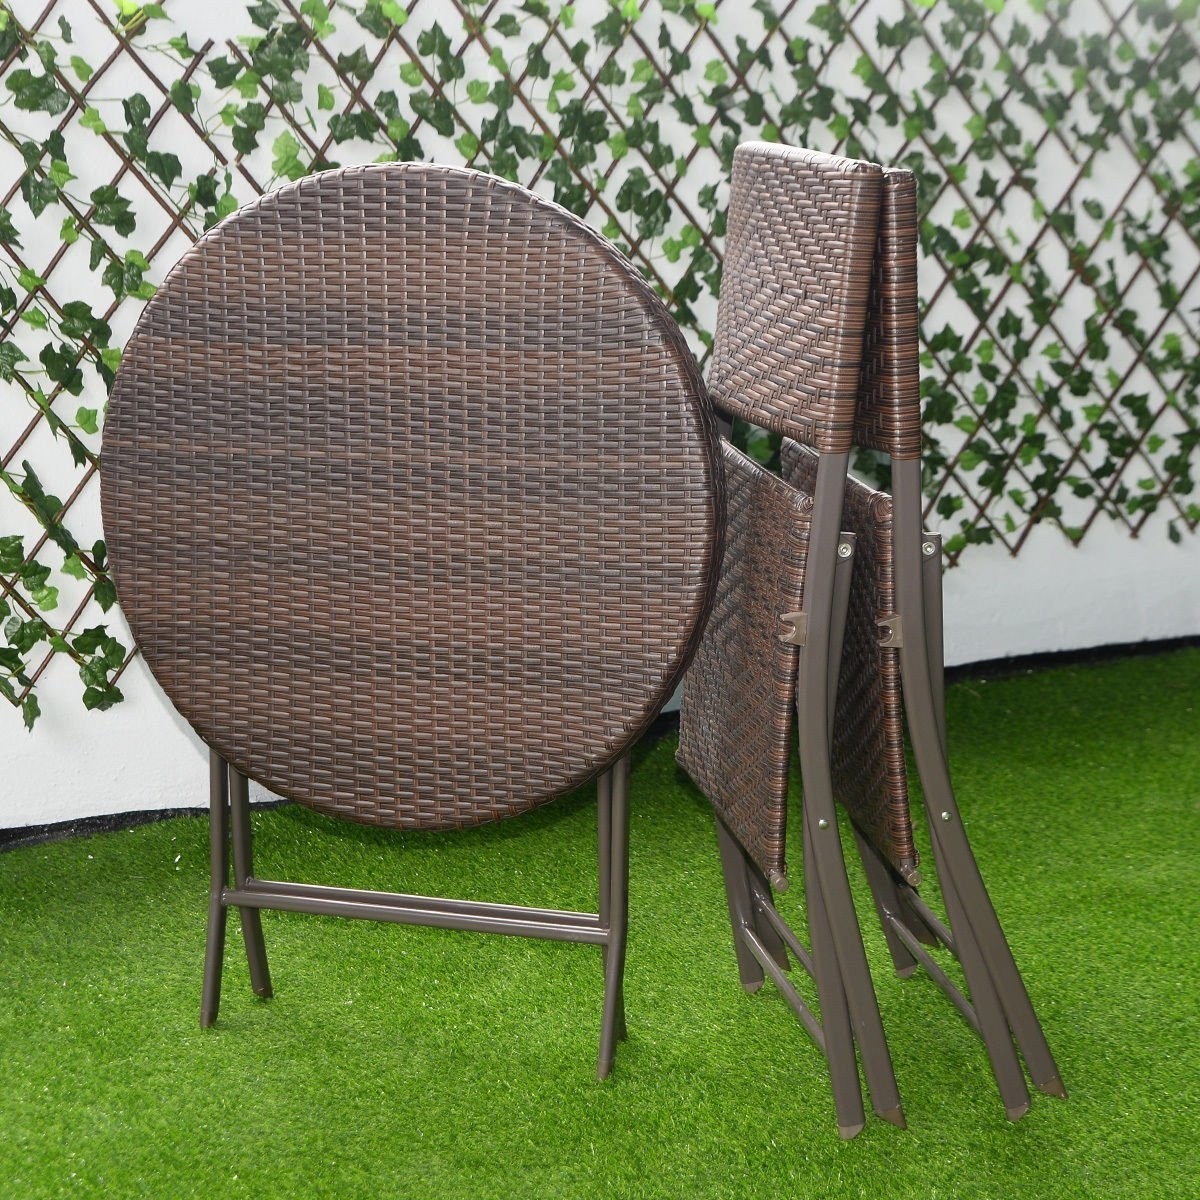 Giantex 3pc folding round table chair bistro set rattan